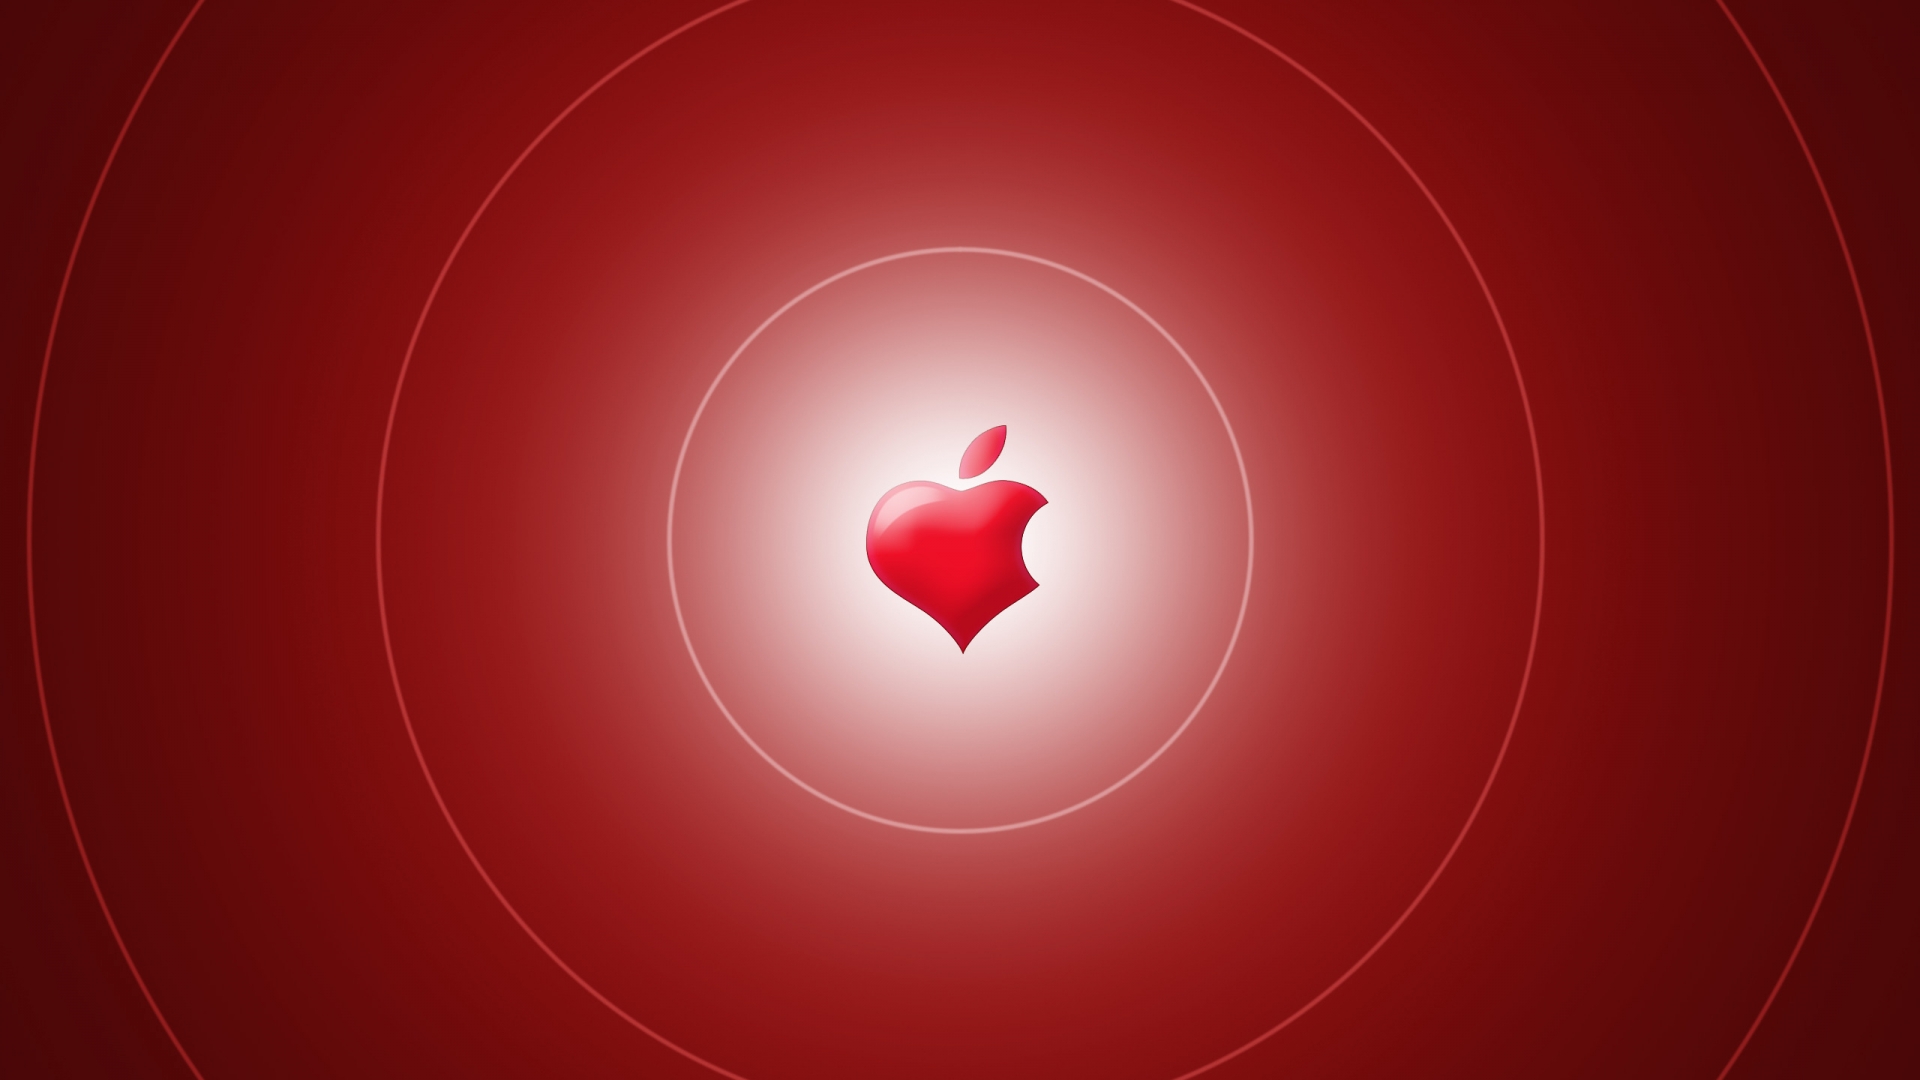 Apple Heart for 1920 x 1080 HDTV 1080p resolution